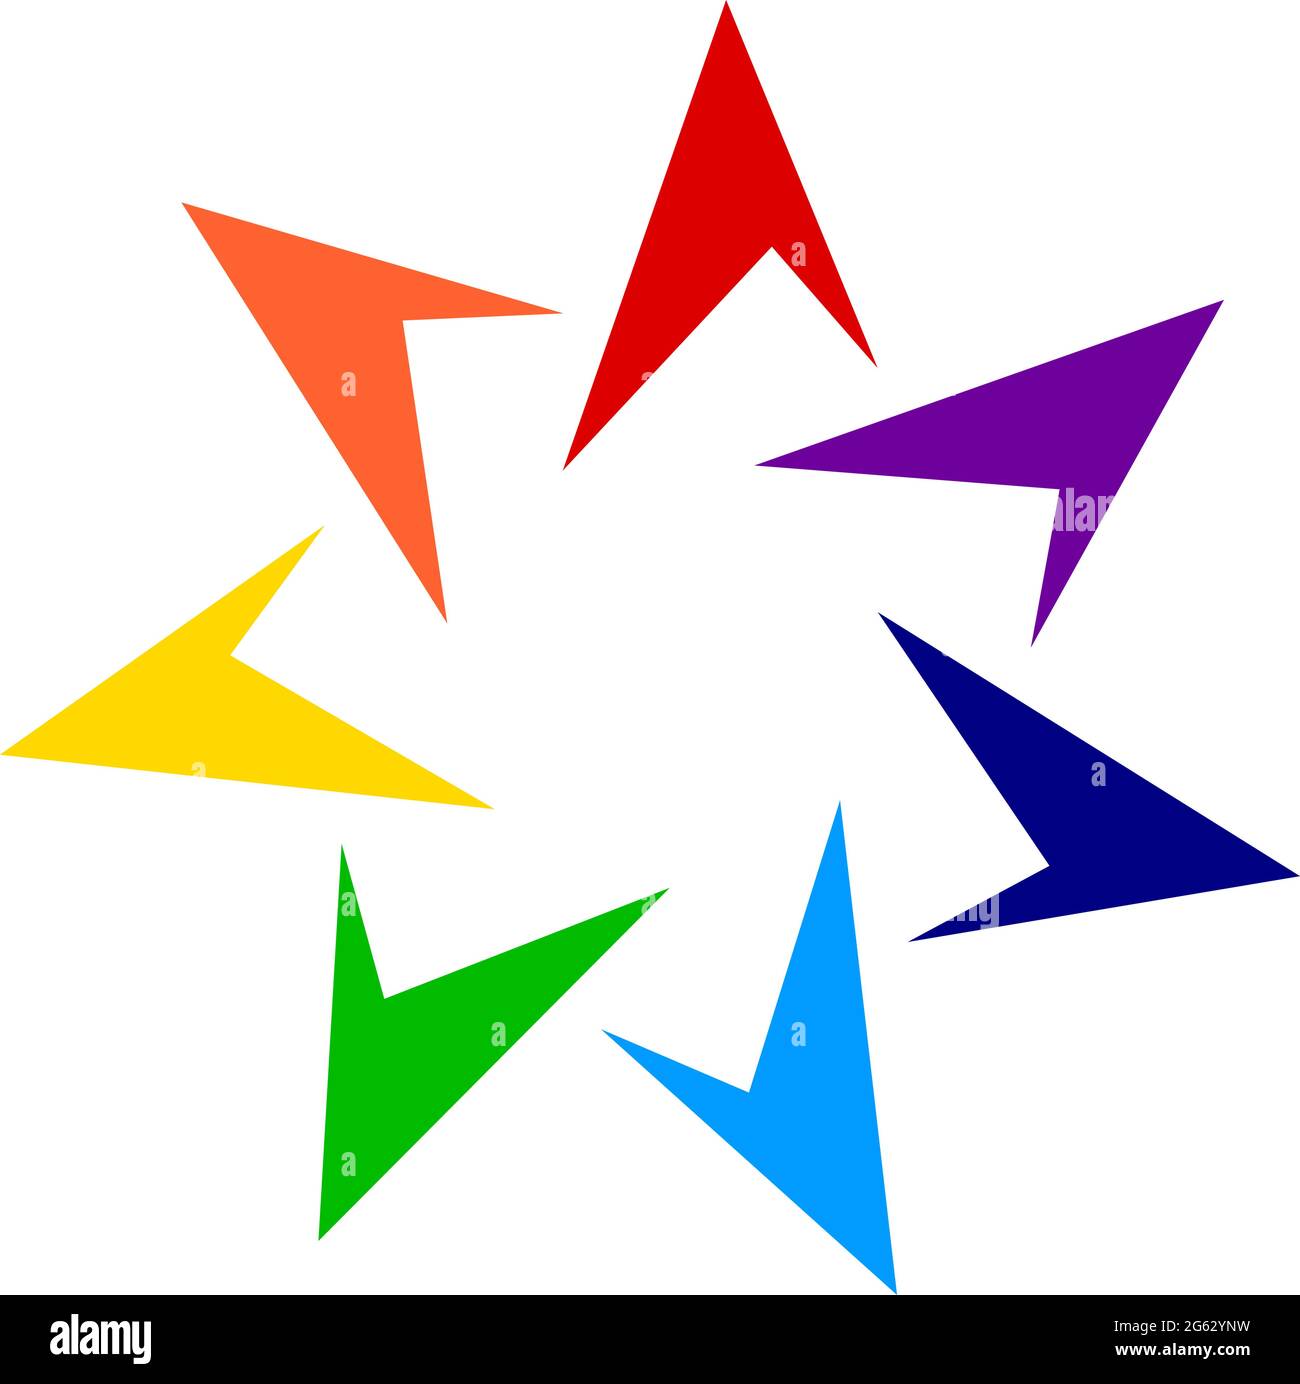 Geometrisches Spiral-, Wirbel-, Wirbel-Element. Rotierende Winkelgeometrie radial, strahlendes Element – Darstellung von Stock-Vektorgrafiken, Clip-Art-Grafiken Stock Vektor